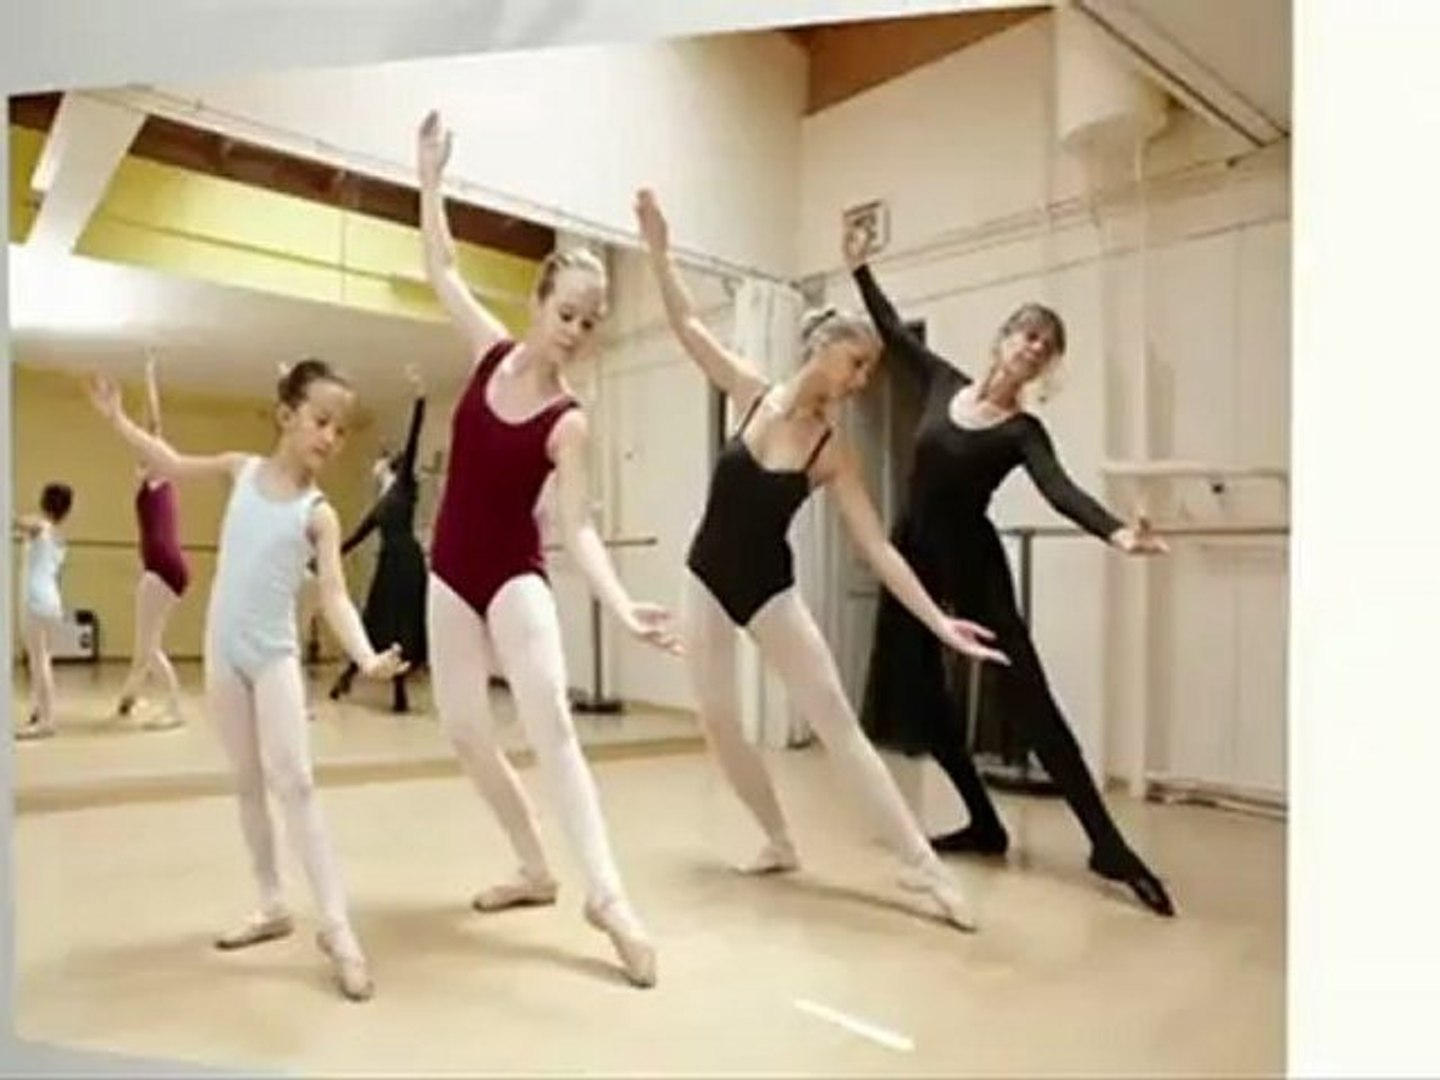 Ballett Studio Tanzen Luzern Scheitlin - video Dailymotion